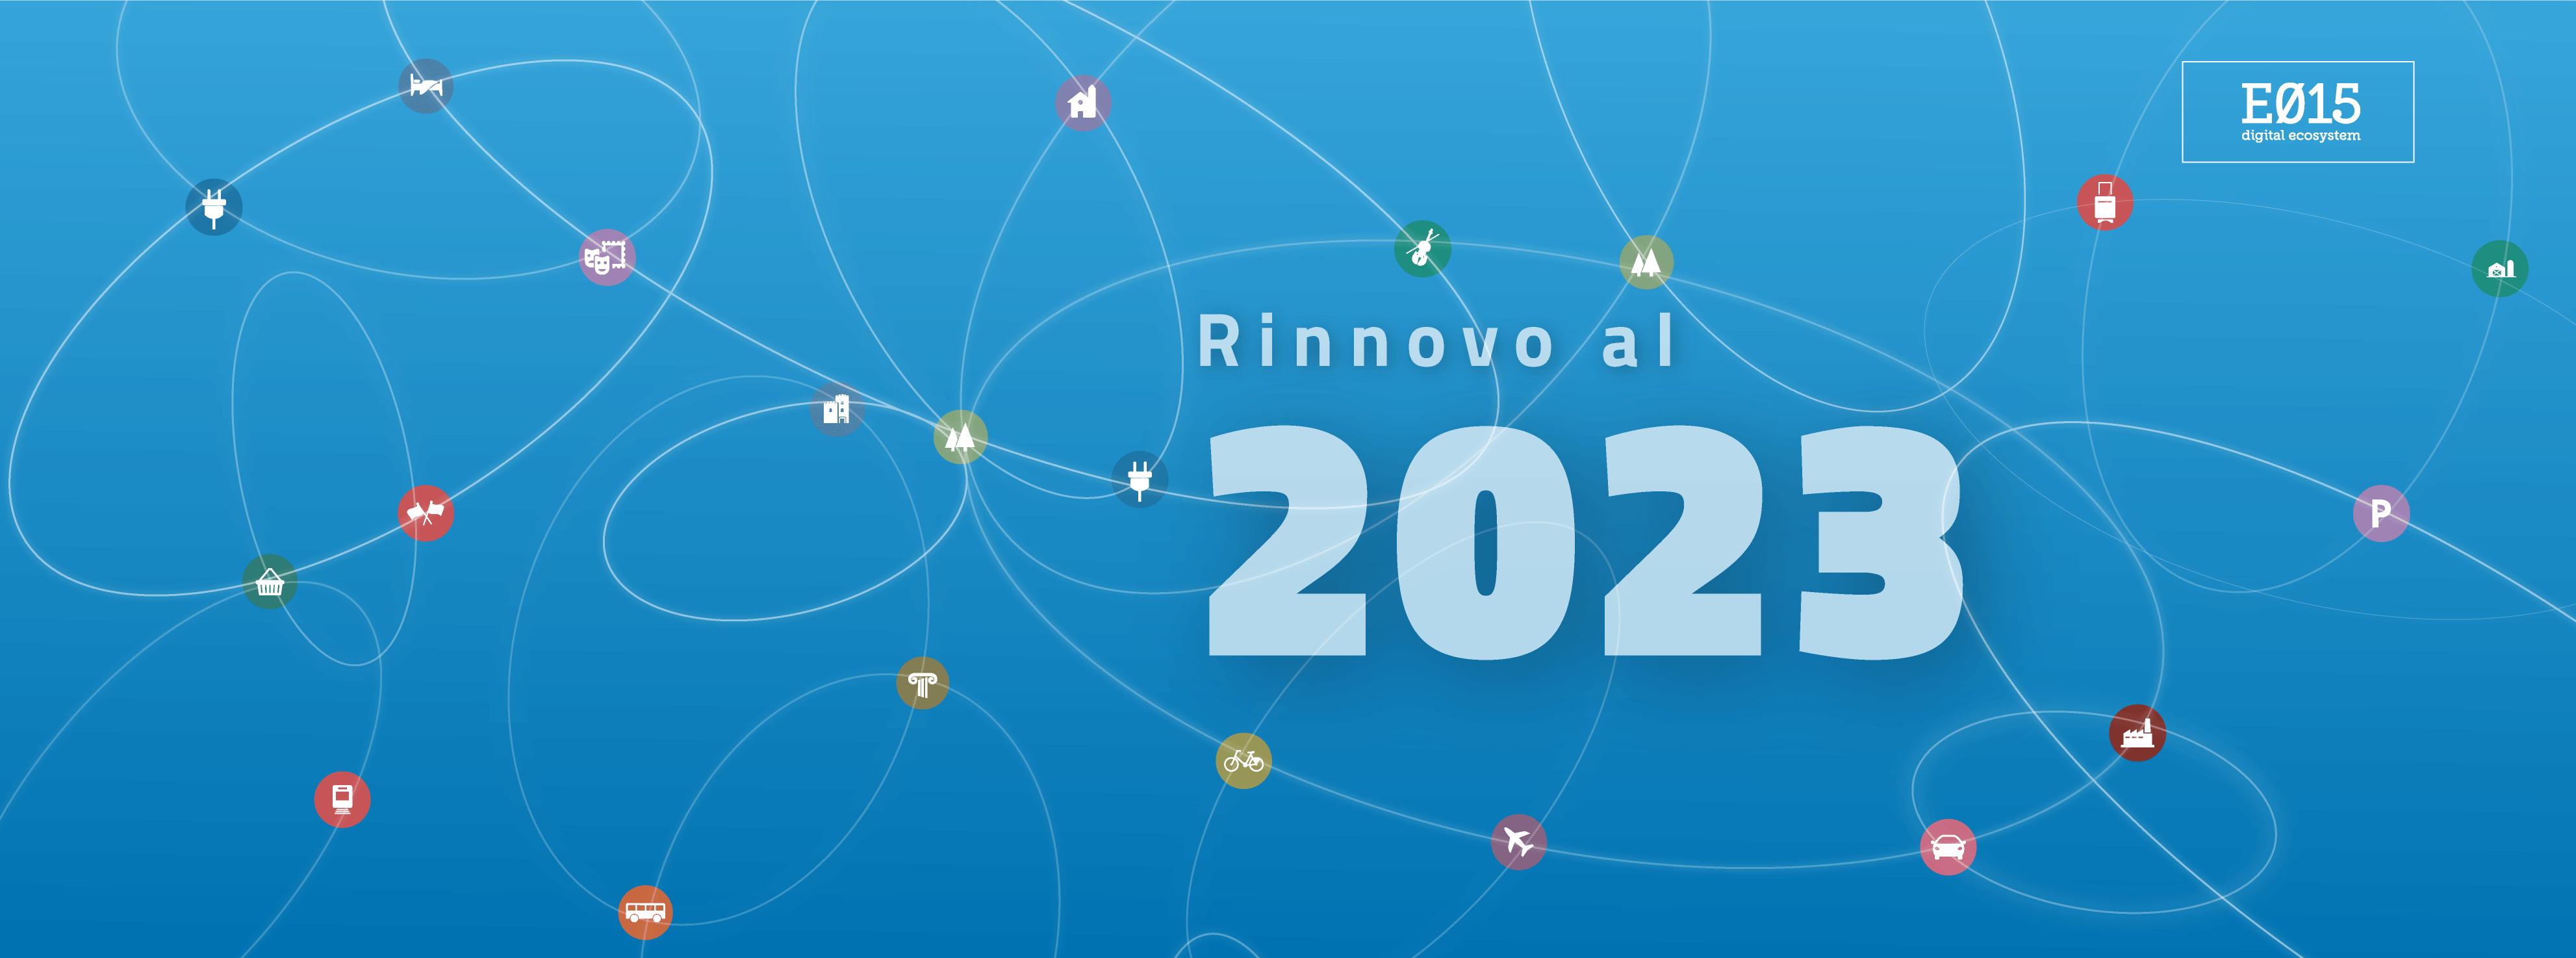 Regione Lombardia rinnova la Convenzione E015 fino al 2023